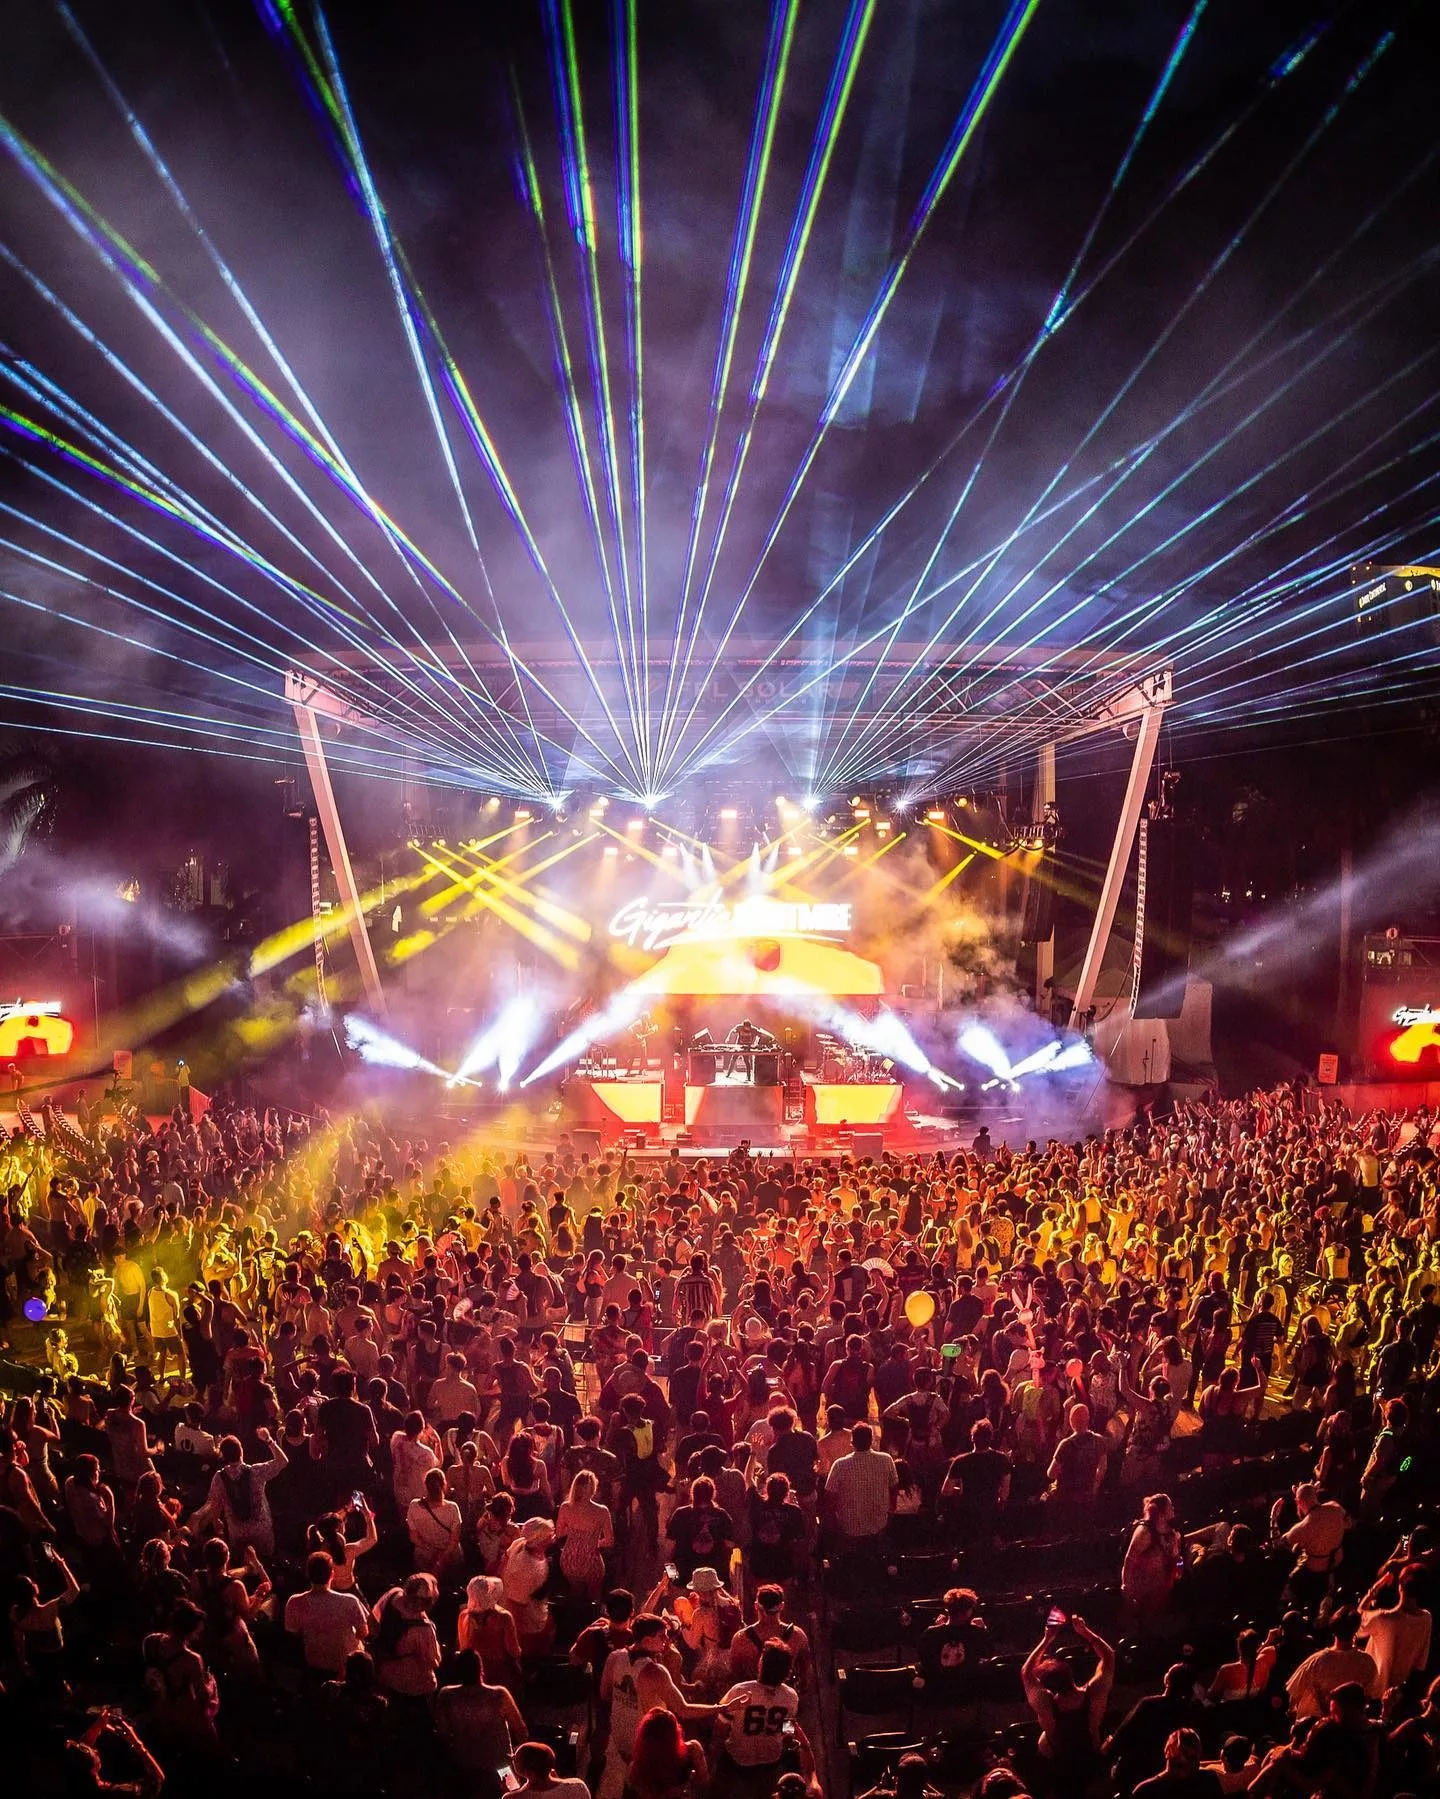 ultra music festival